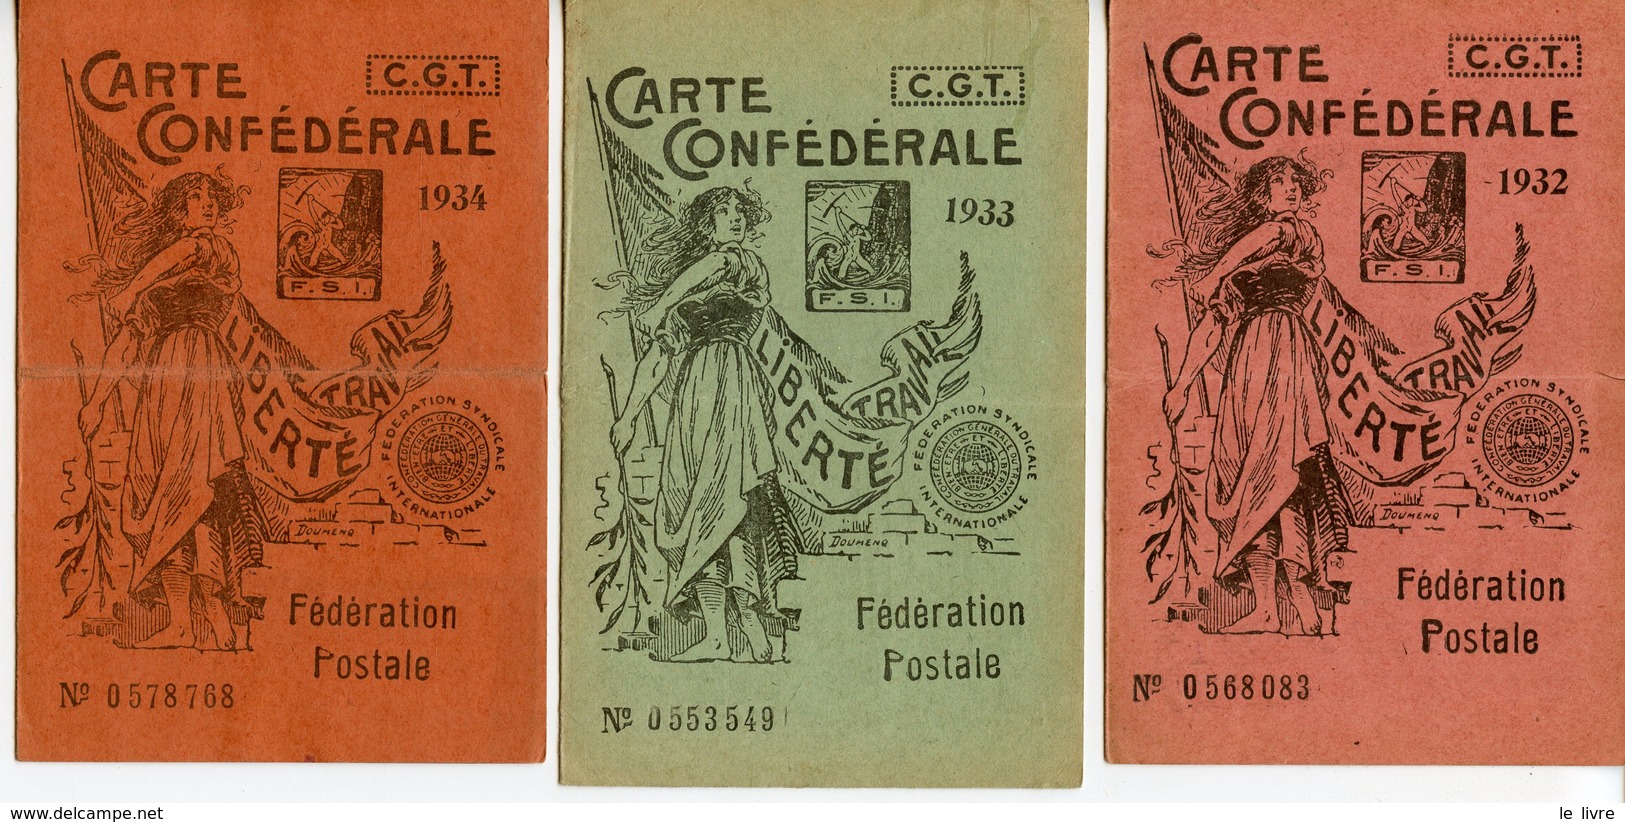 1282. LOT DE 3 CARTES CONFEDERALES CGT DE LA FEDERATION POSTALE 1932 1933 1934 - Sin Clasificación